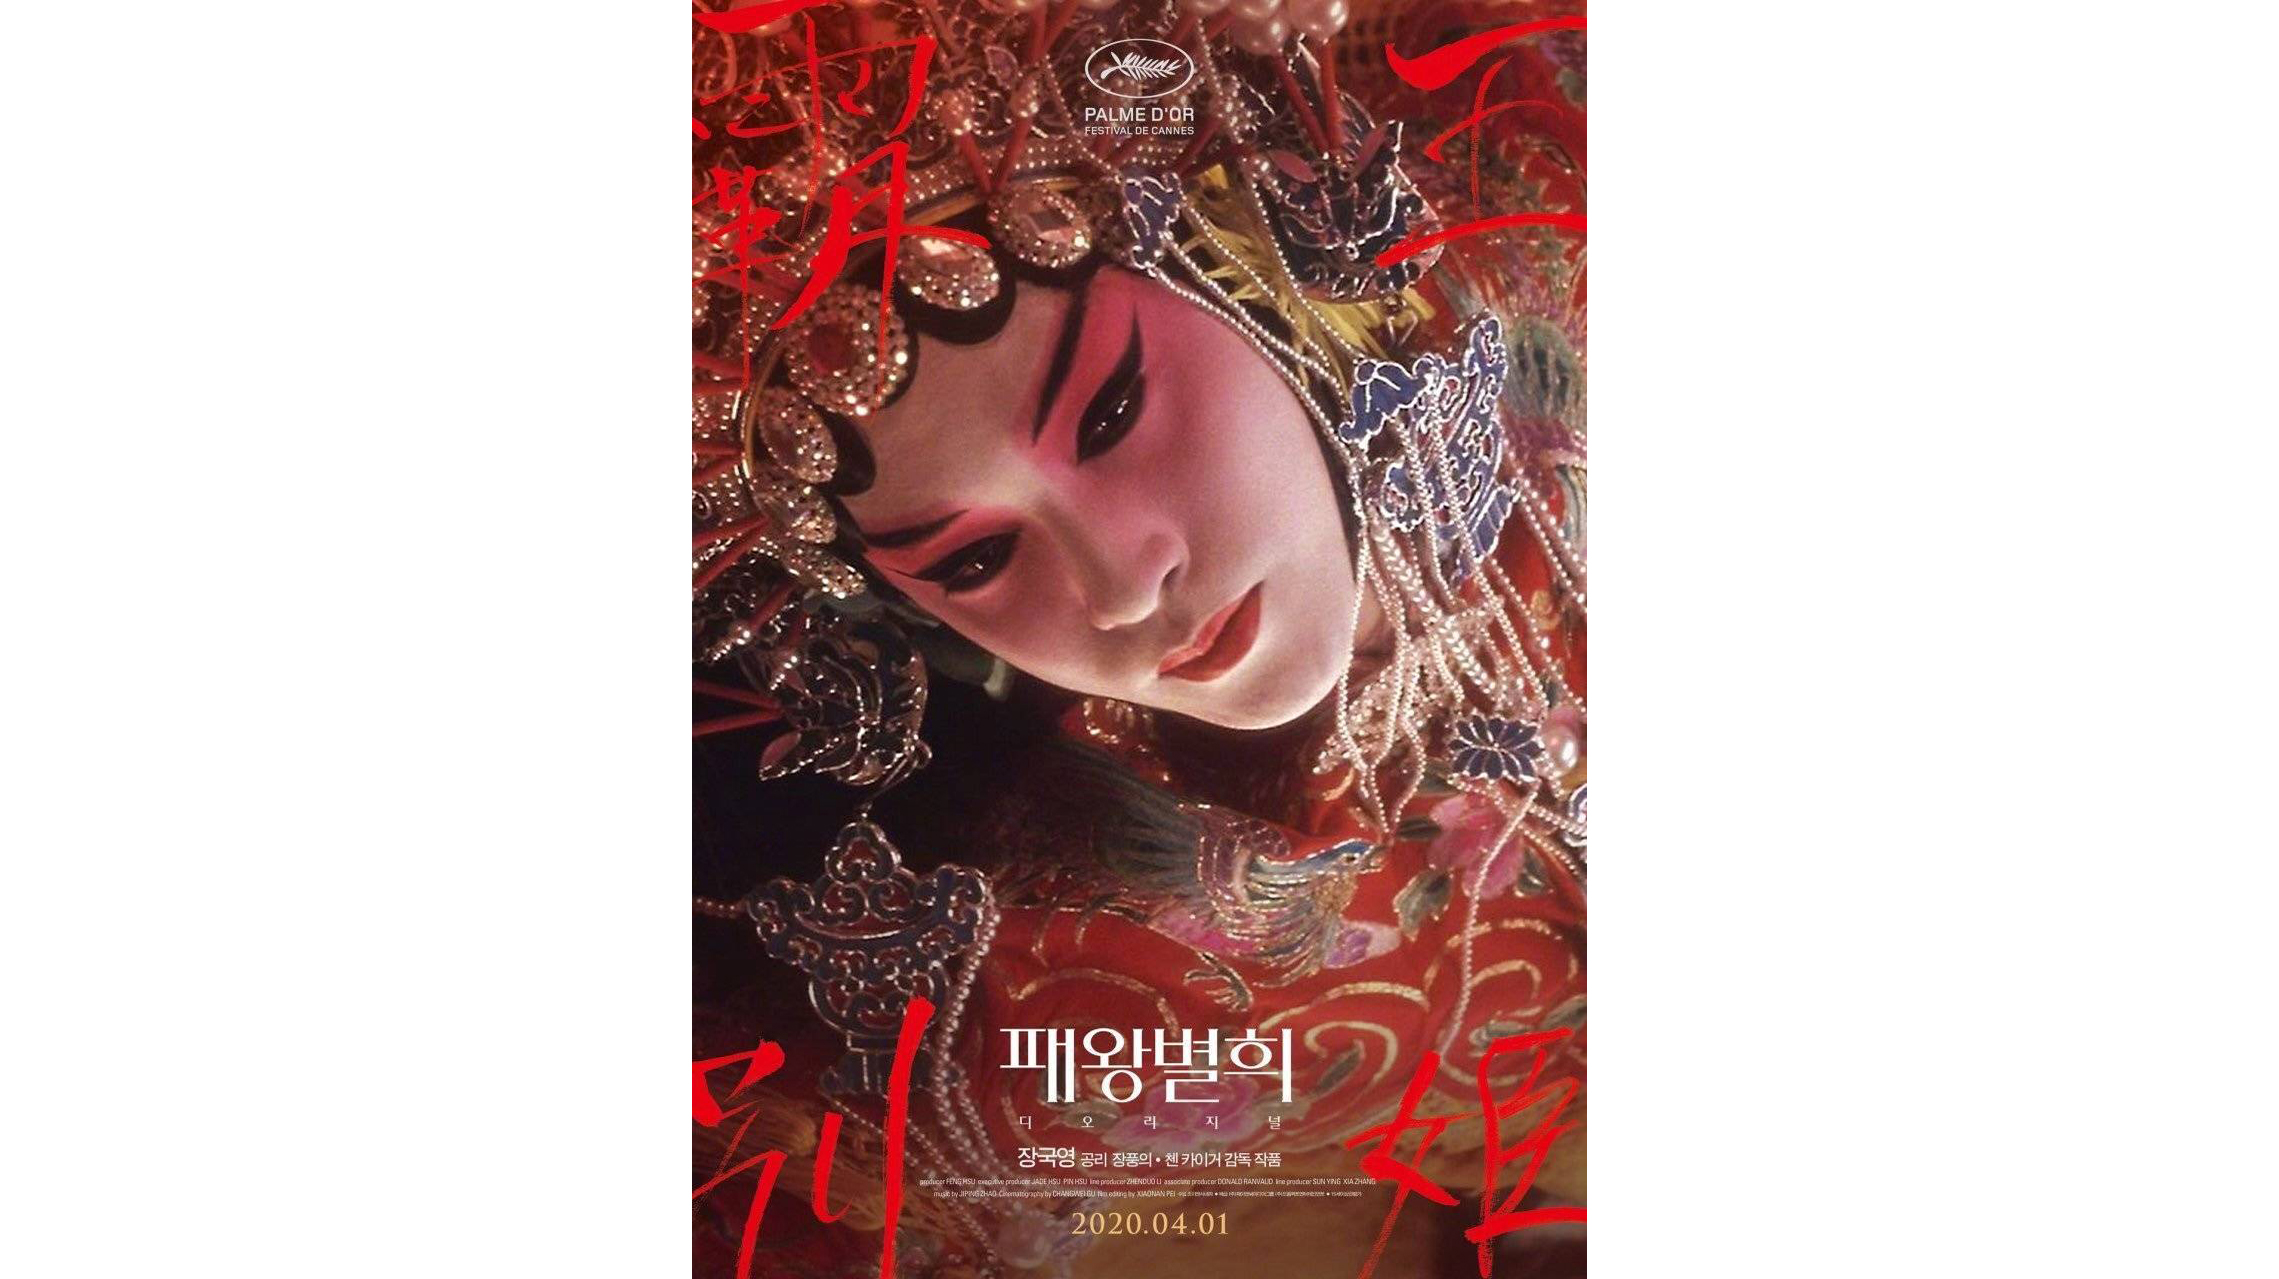 《霸王别姬》韩国重映版预告片释出